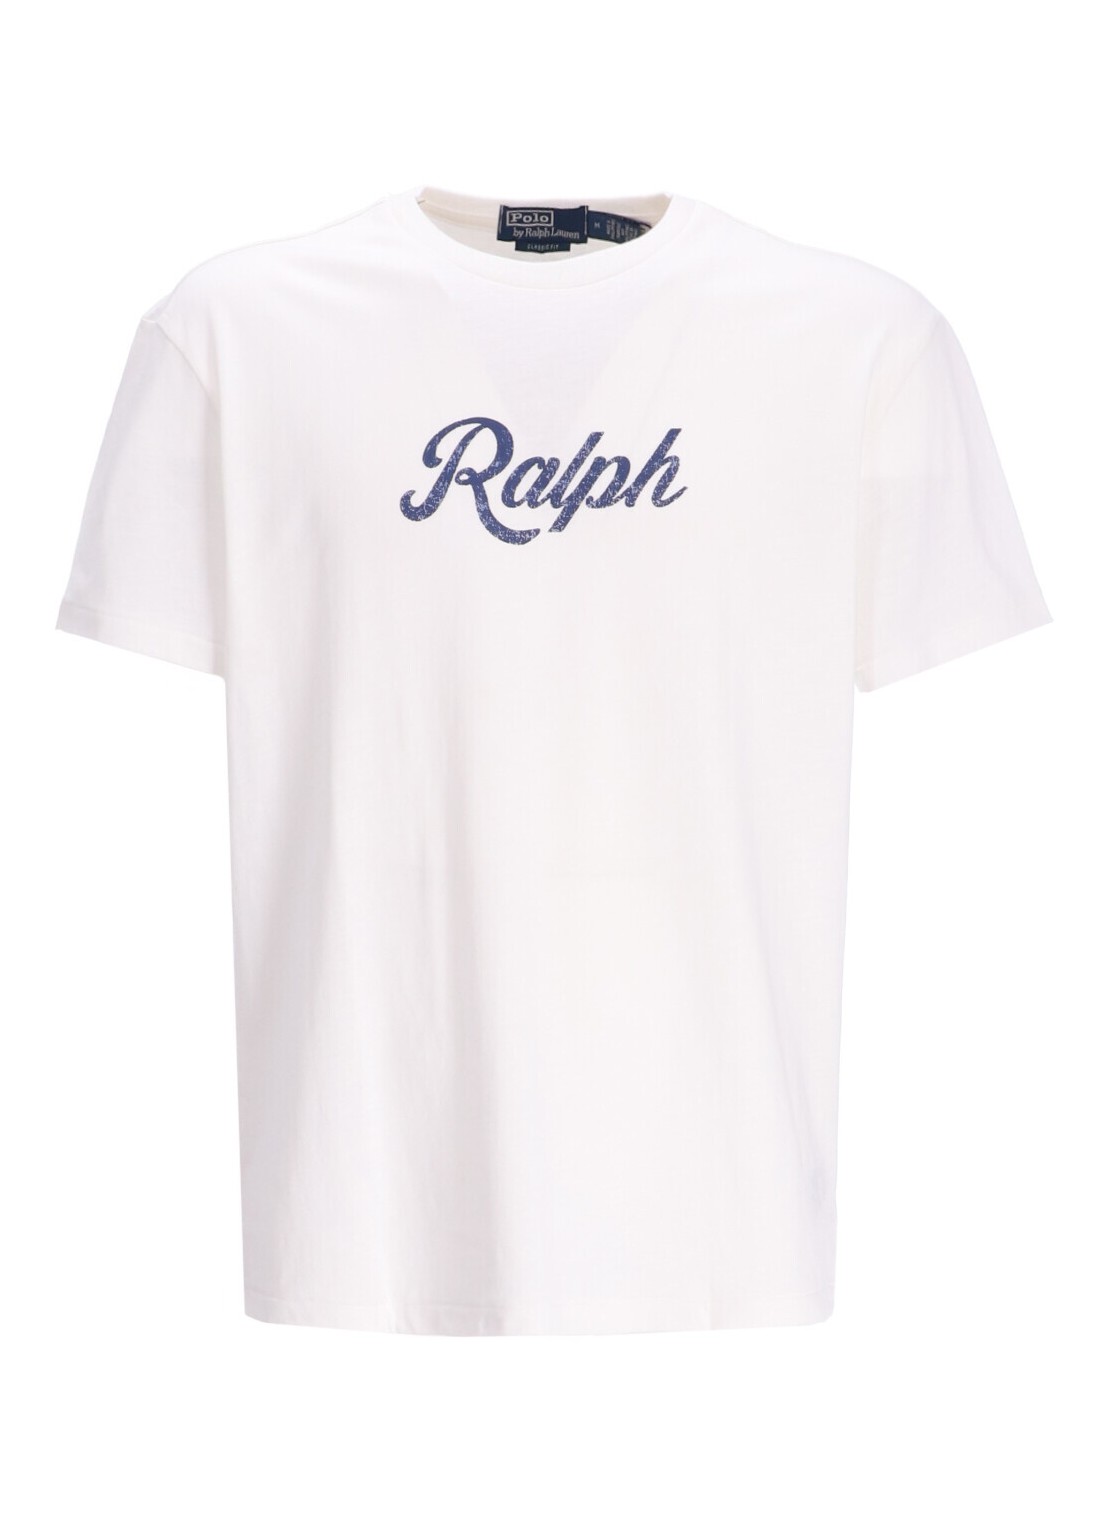 Camiseta polo ralph lauren t-shirt mansscnclsm1-short sleeve-t-shirt - 710936401002 nevis talla blan